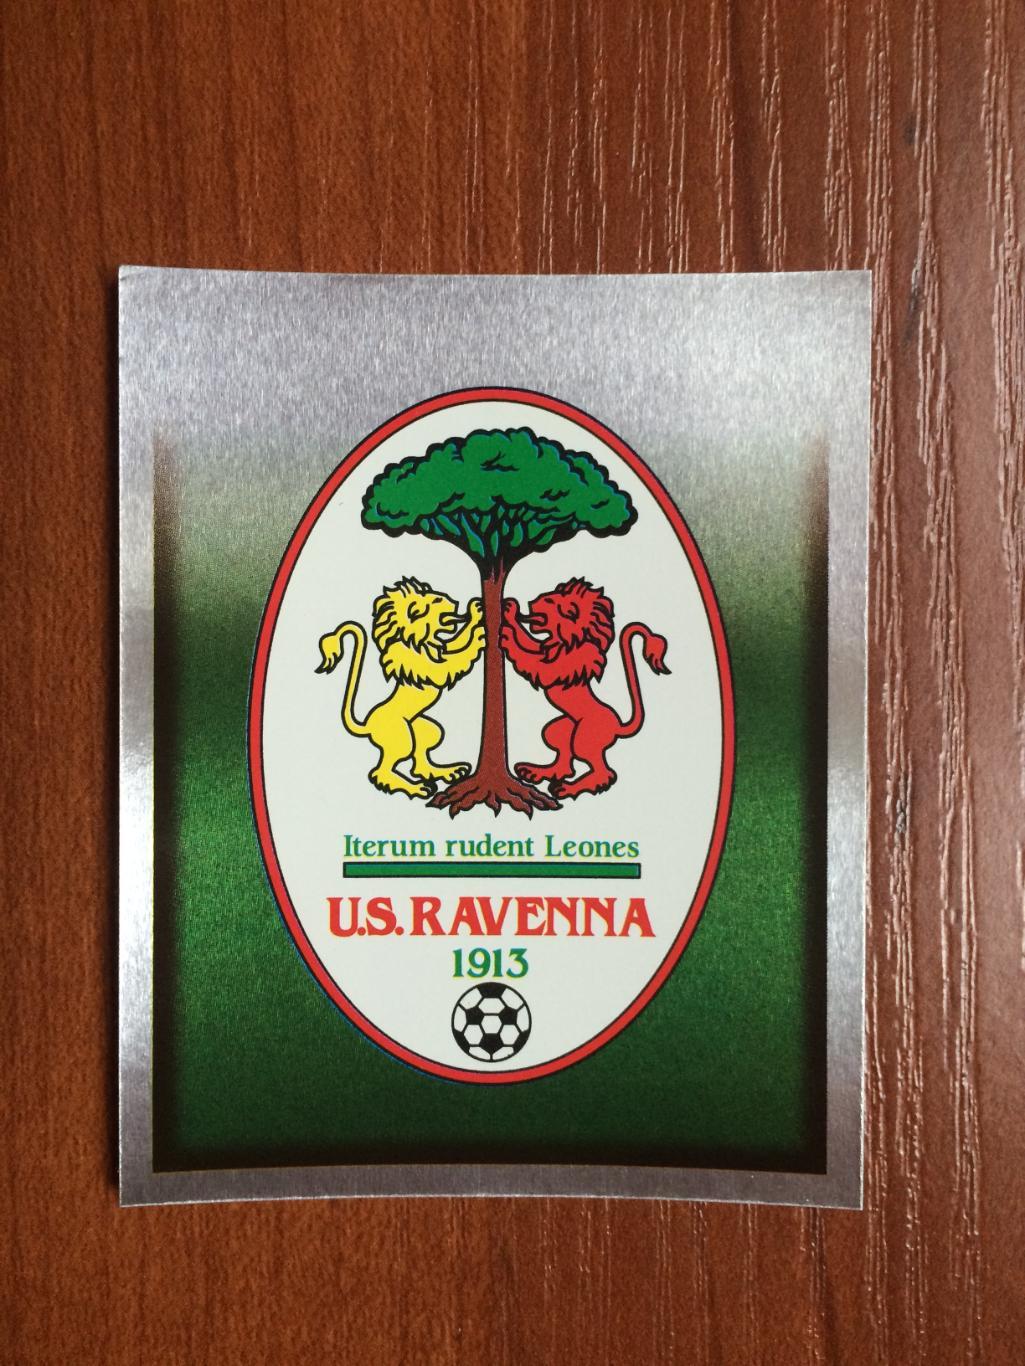 Наклейка MERLIN Итальянский Футбол 1997-1998 Ravenna emblem № 513